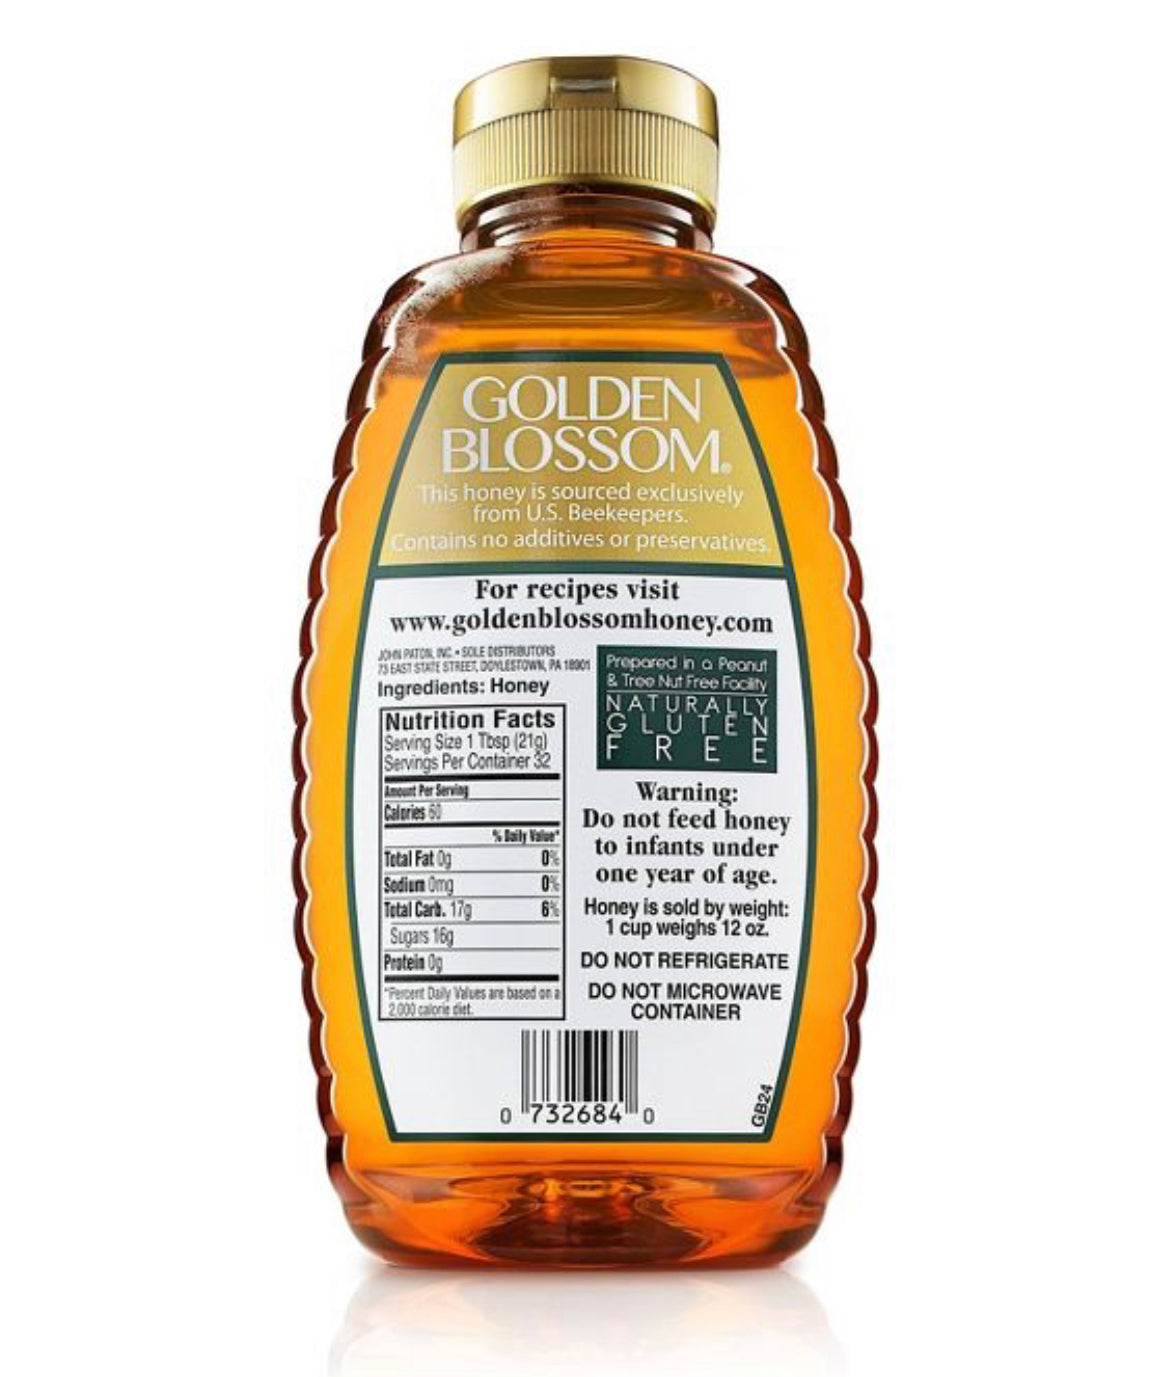 Golden Blossom Honey Premium Pure U.S. Honey 24oz